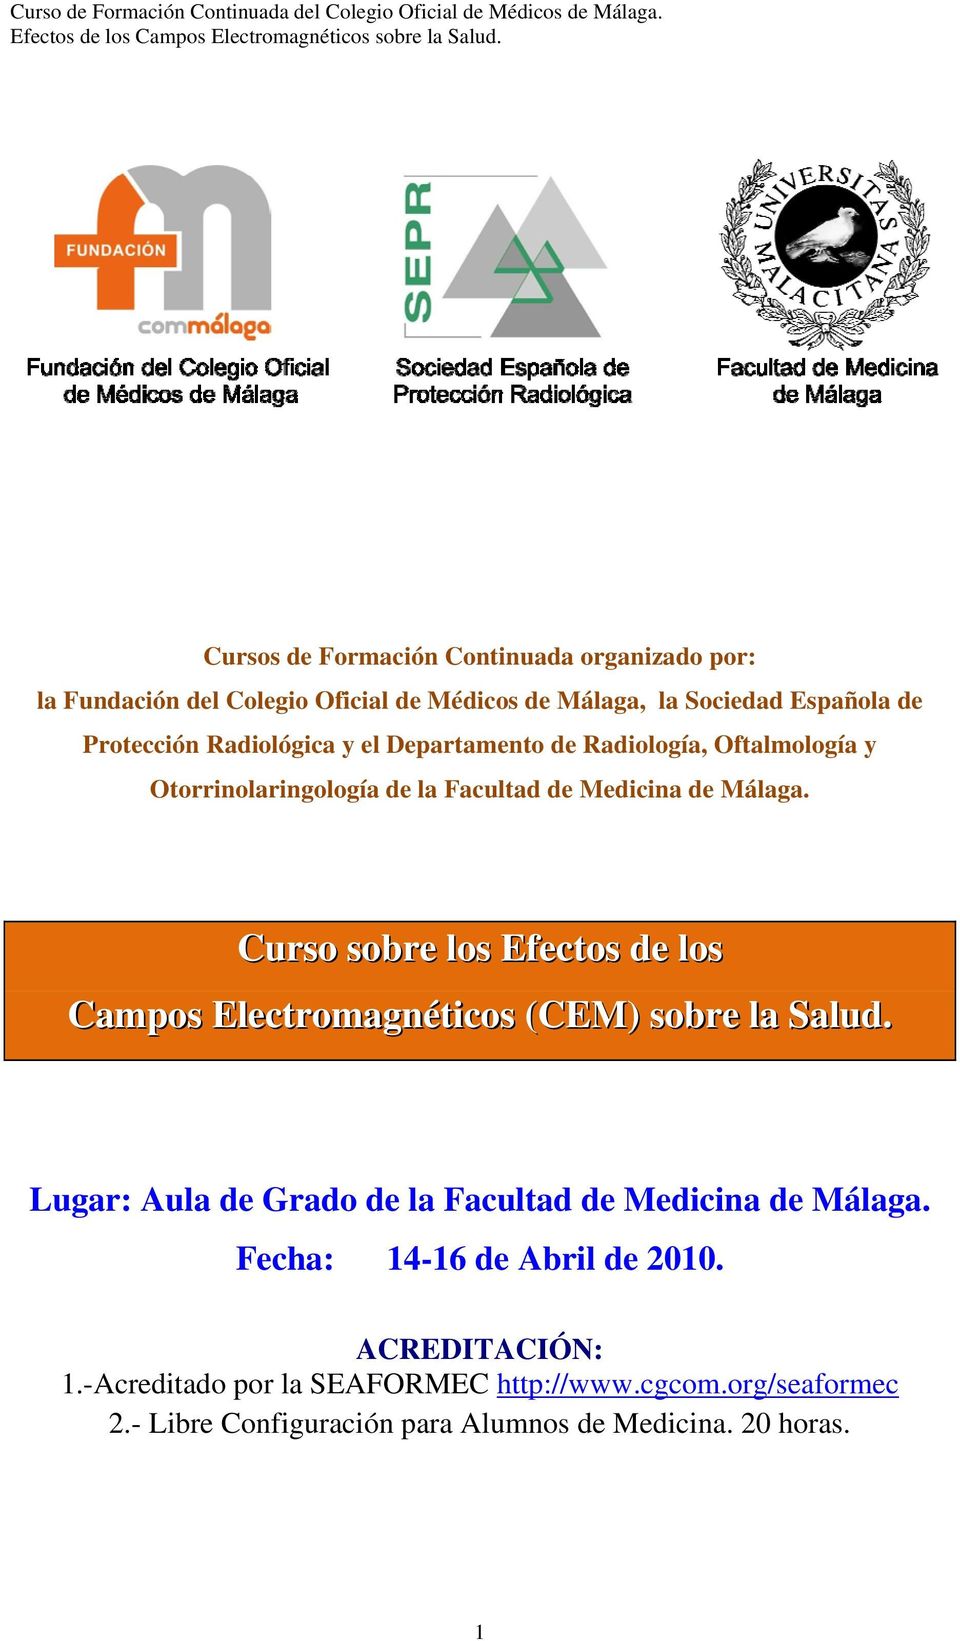 Curso sobre los Efectos de los Campos Electromagnéticos (CEM) sobre la Salud. Lugar: Aula de Grado de la Facultad de Medicina de Málaga.